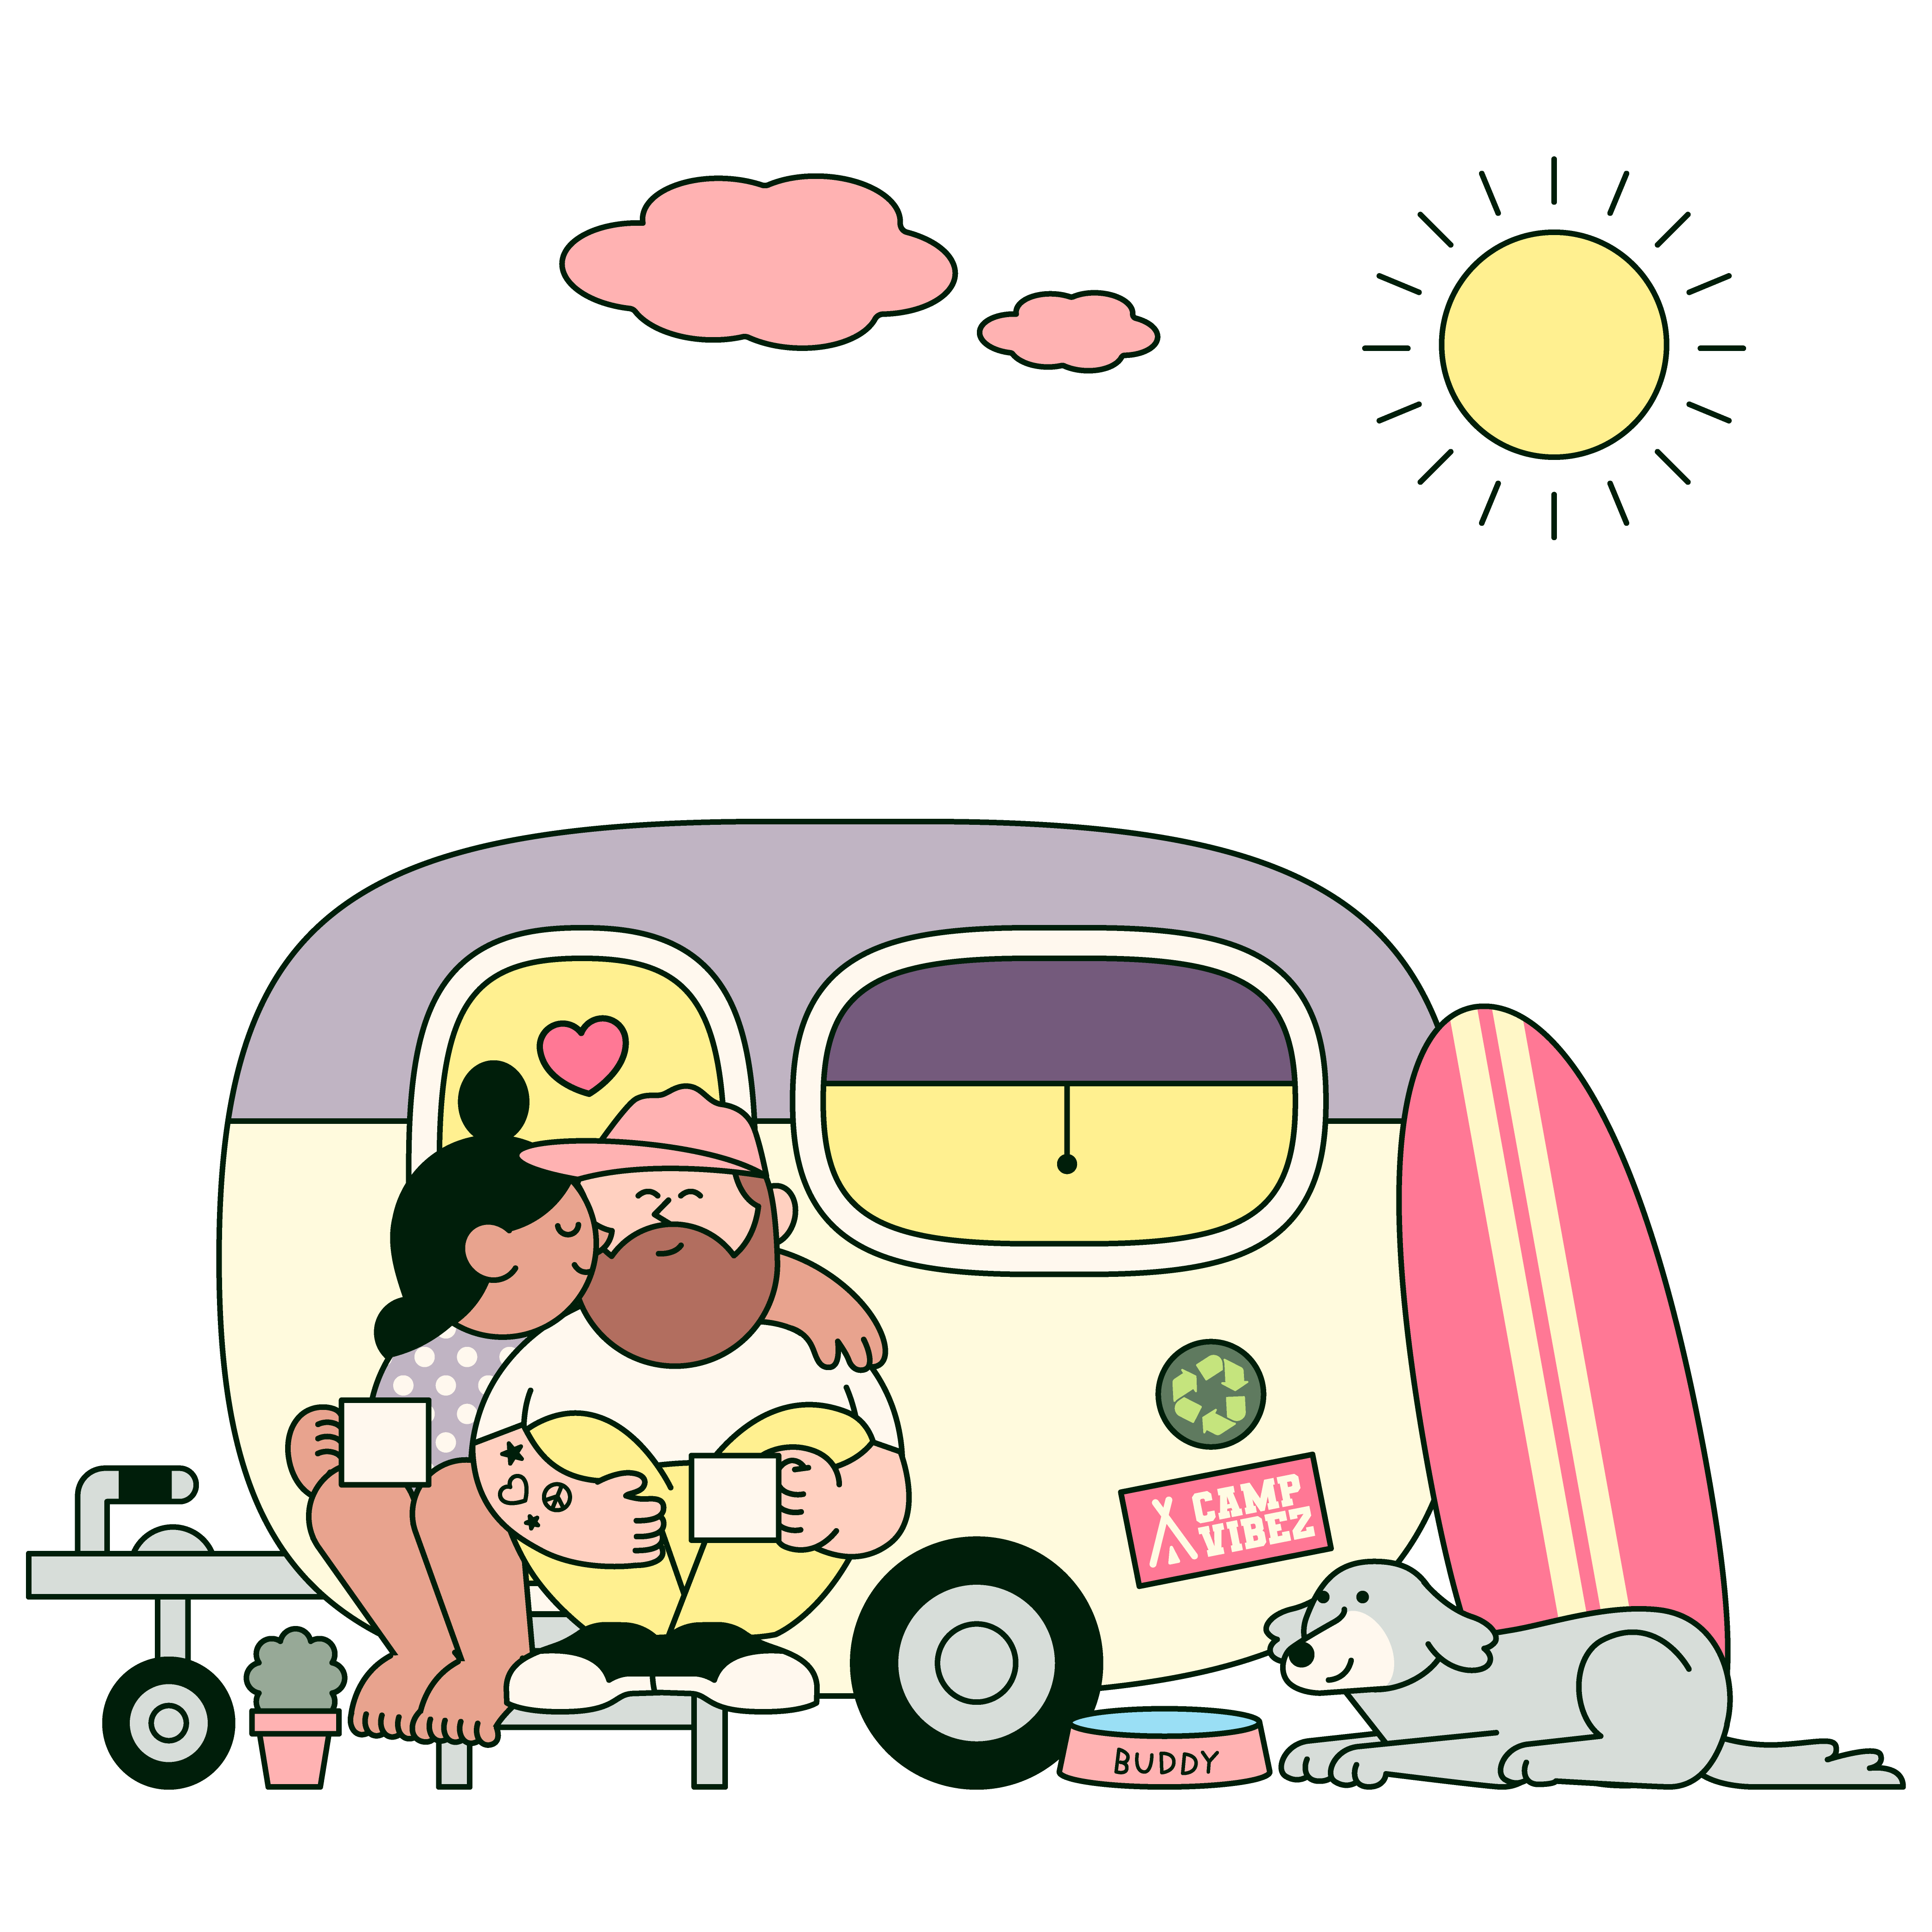 Woman kissing her partner in their caravan.